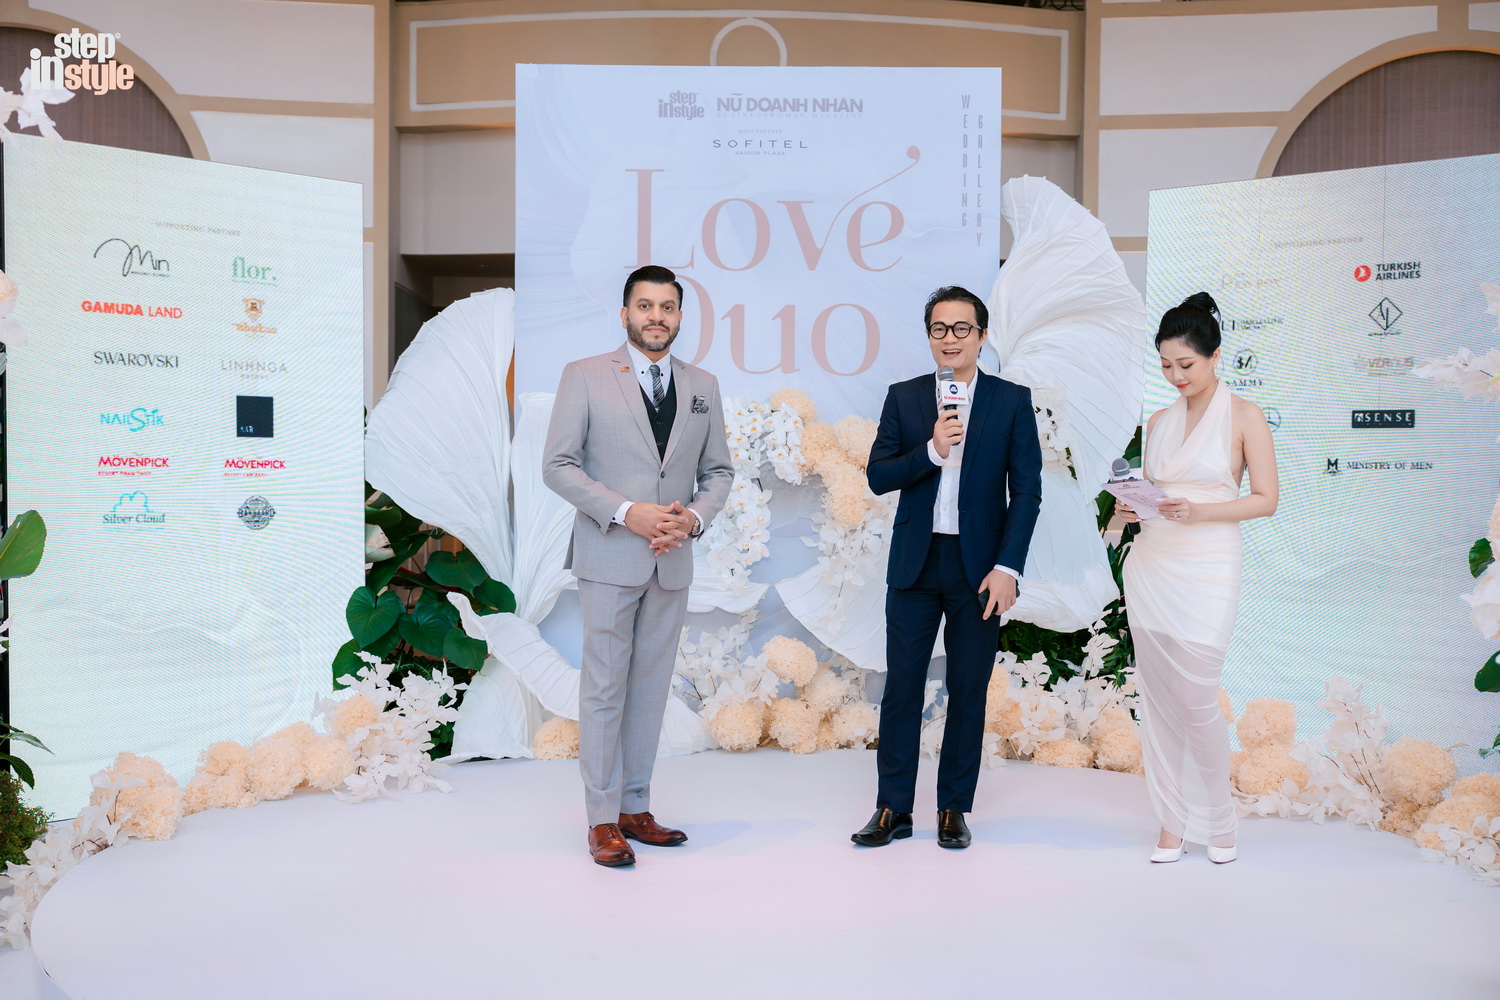 Ông Nguyễn Công Minh, CEO Tạp chí Nữ Doanh Nhân phát biểu khai mạc Wedding Gallery: Love Duo